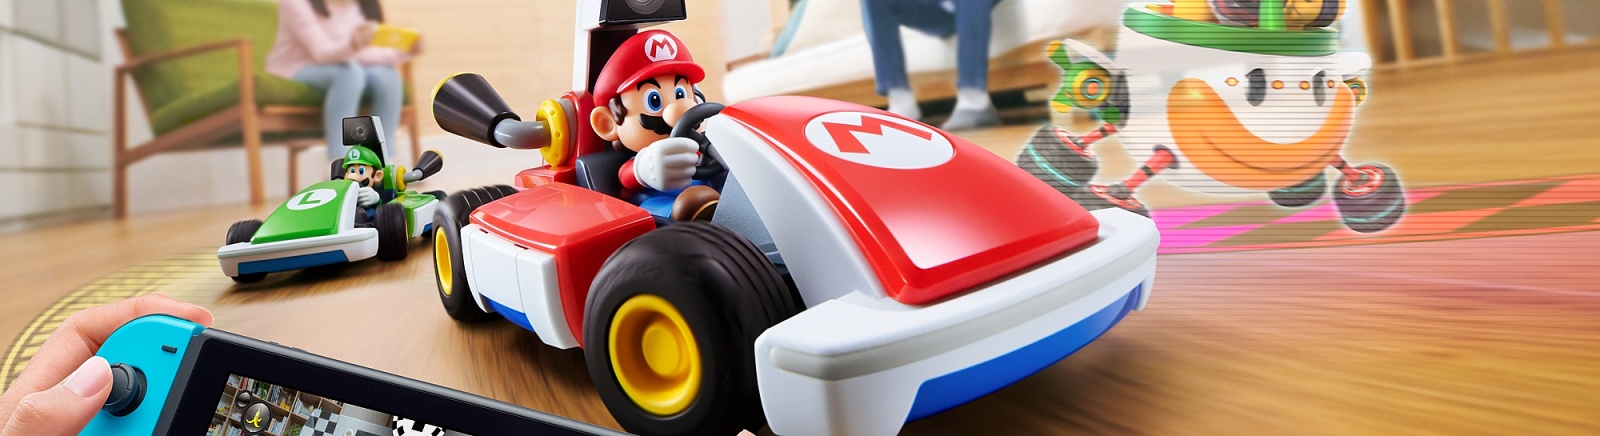 Дата выхода Mario Kart Live: Home Circuit  на Nintendo Switch в России и во всем мире